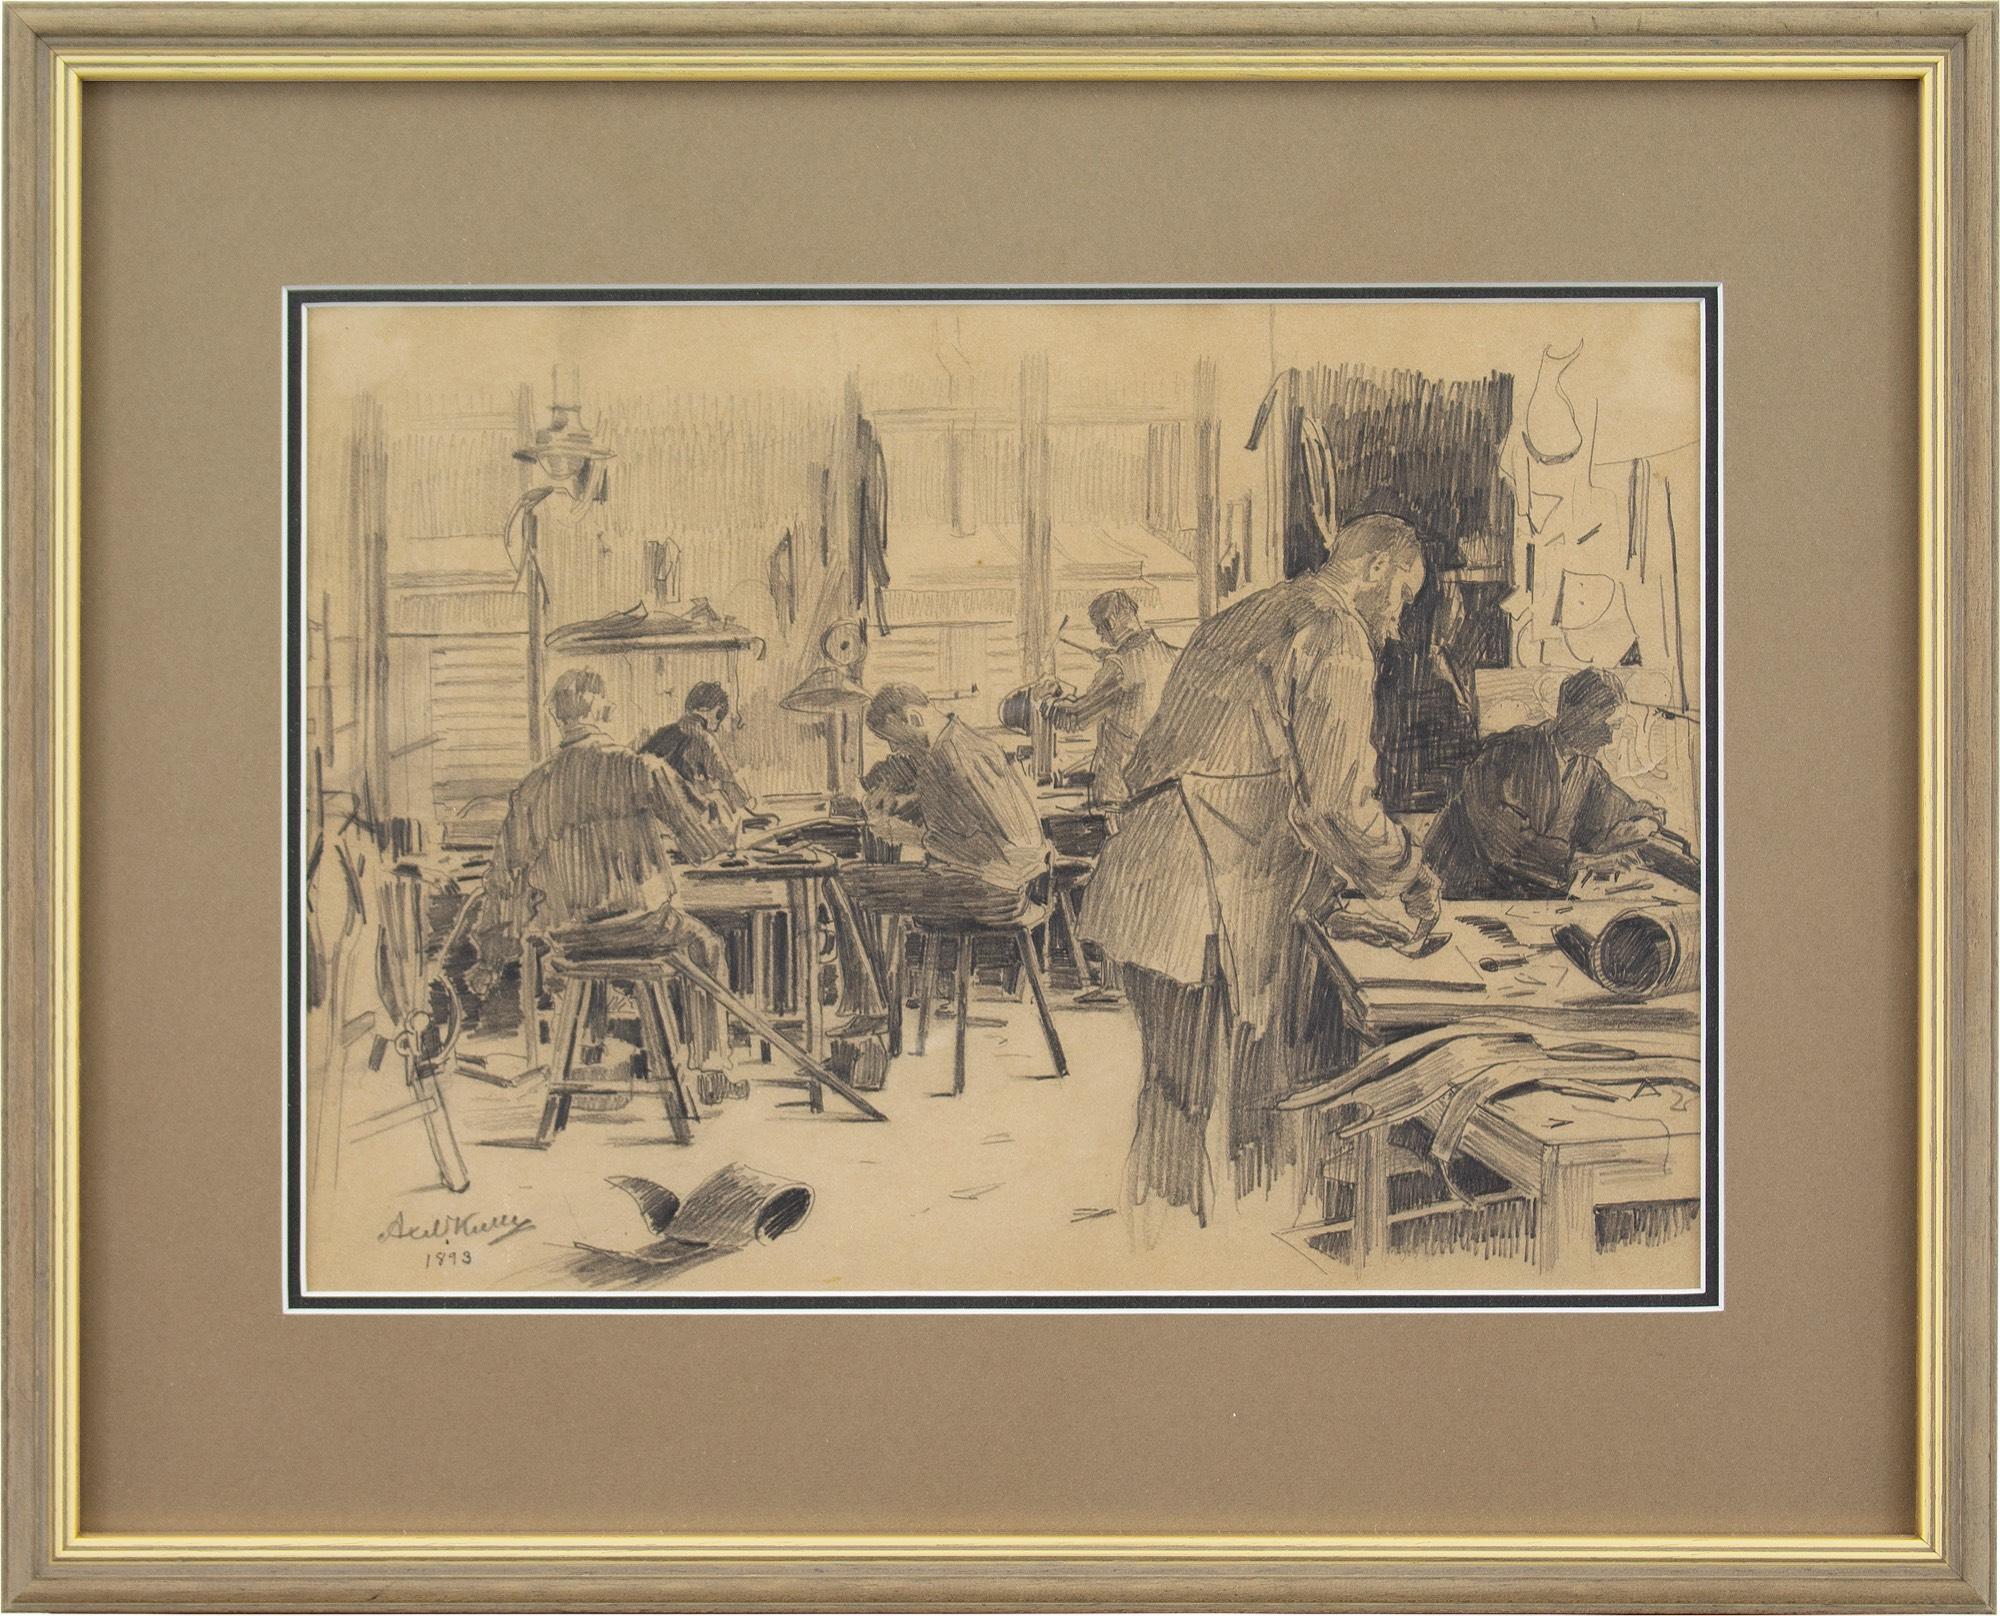 Cet intéressant dessin de la fin du XIXe siècle, réalisé par l'artiste suédois Axel Kulle (1846-1908), représente six hommes dans une tannerie de cuir. Ils sont absorbés par leur travail, chacun la tête basse.

Il est inhabituel de trouver des